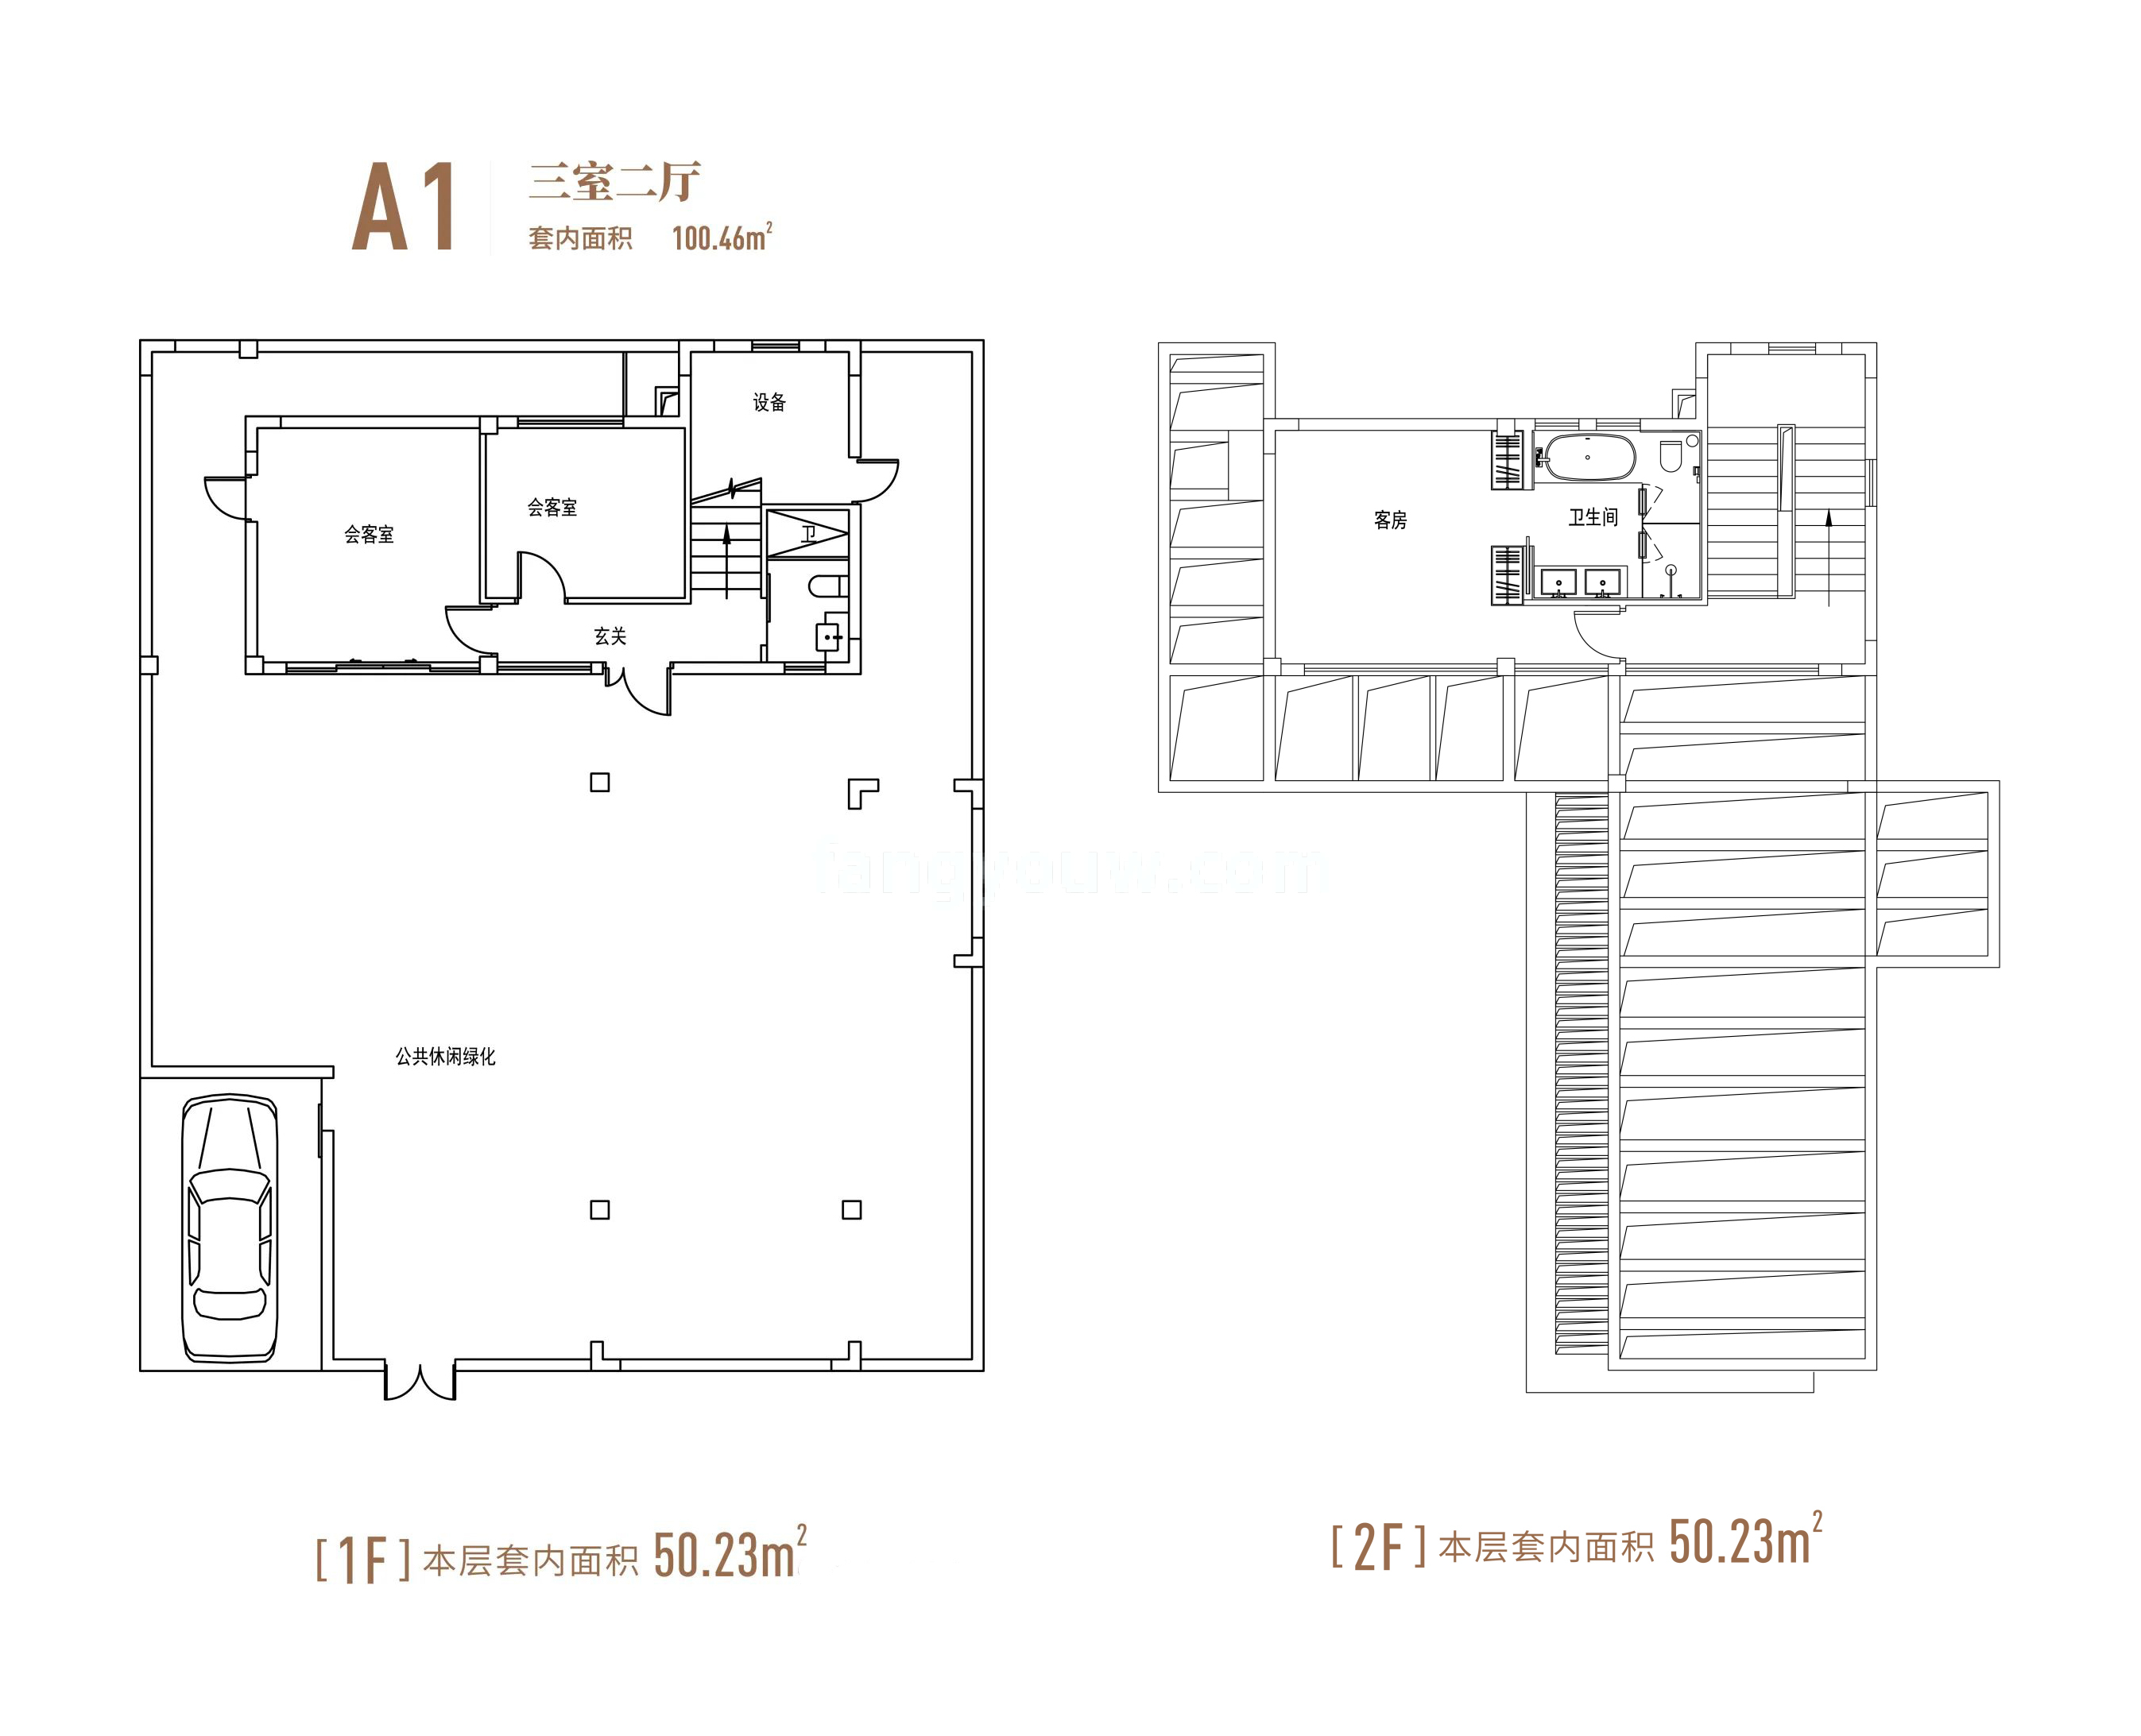 鲁能海蓝福源西一区 独栋 二期A1户型 3房2厅 套内面积100㎡